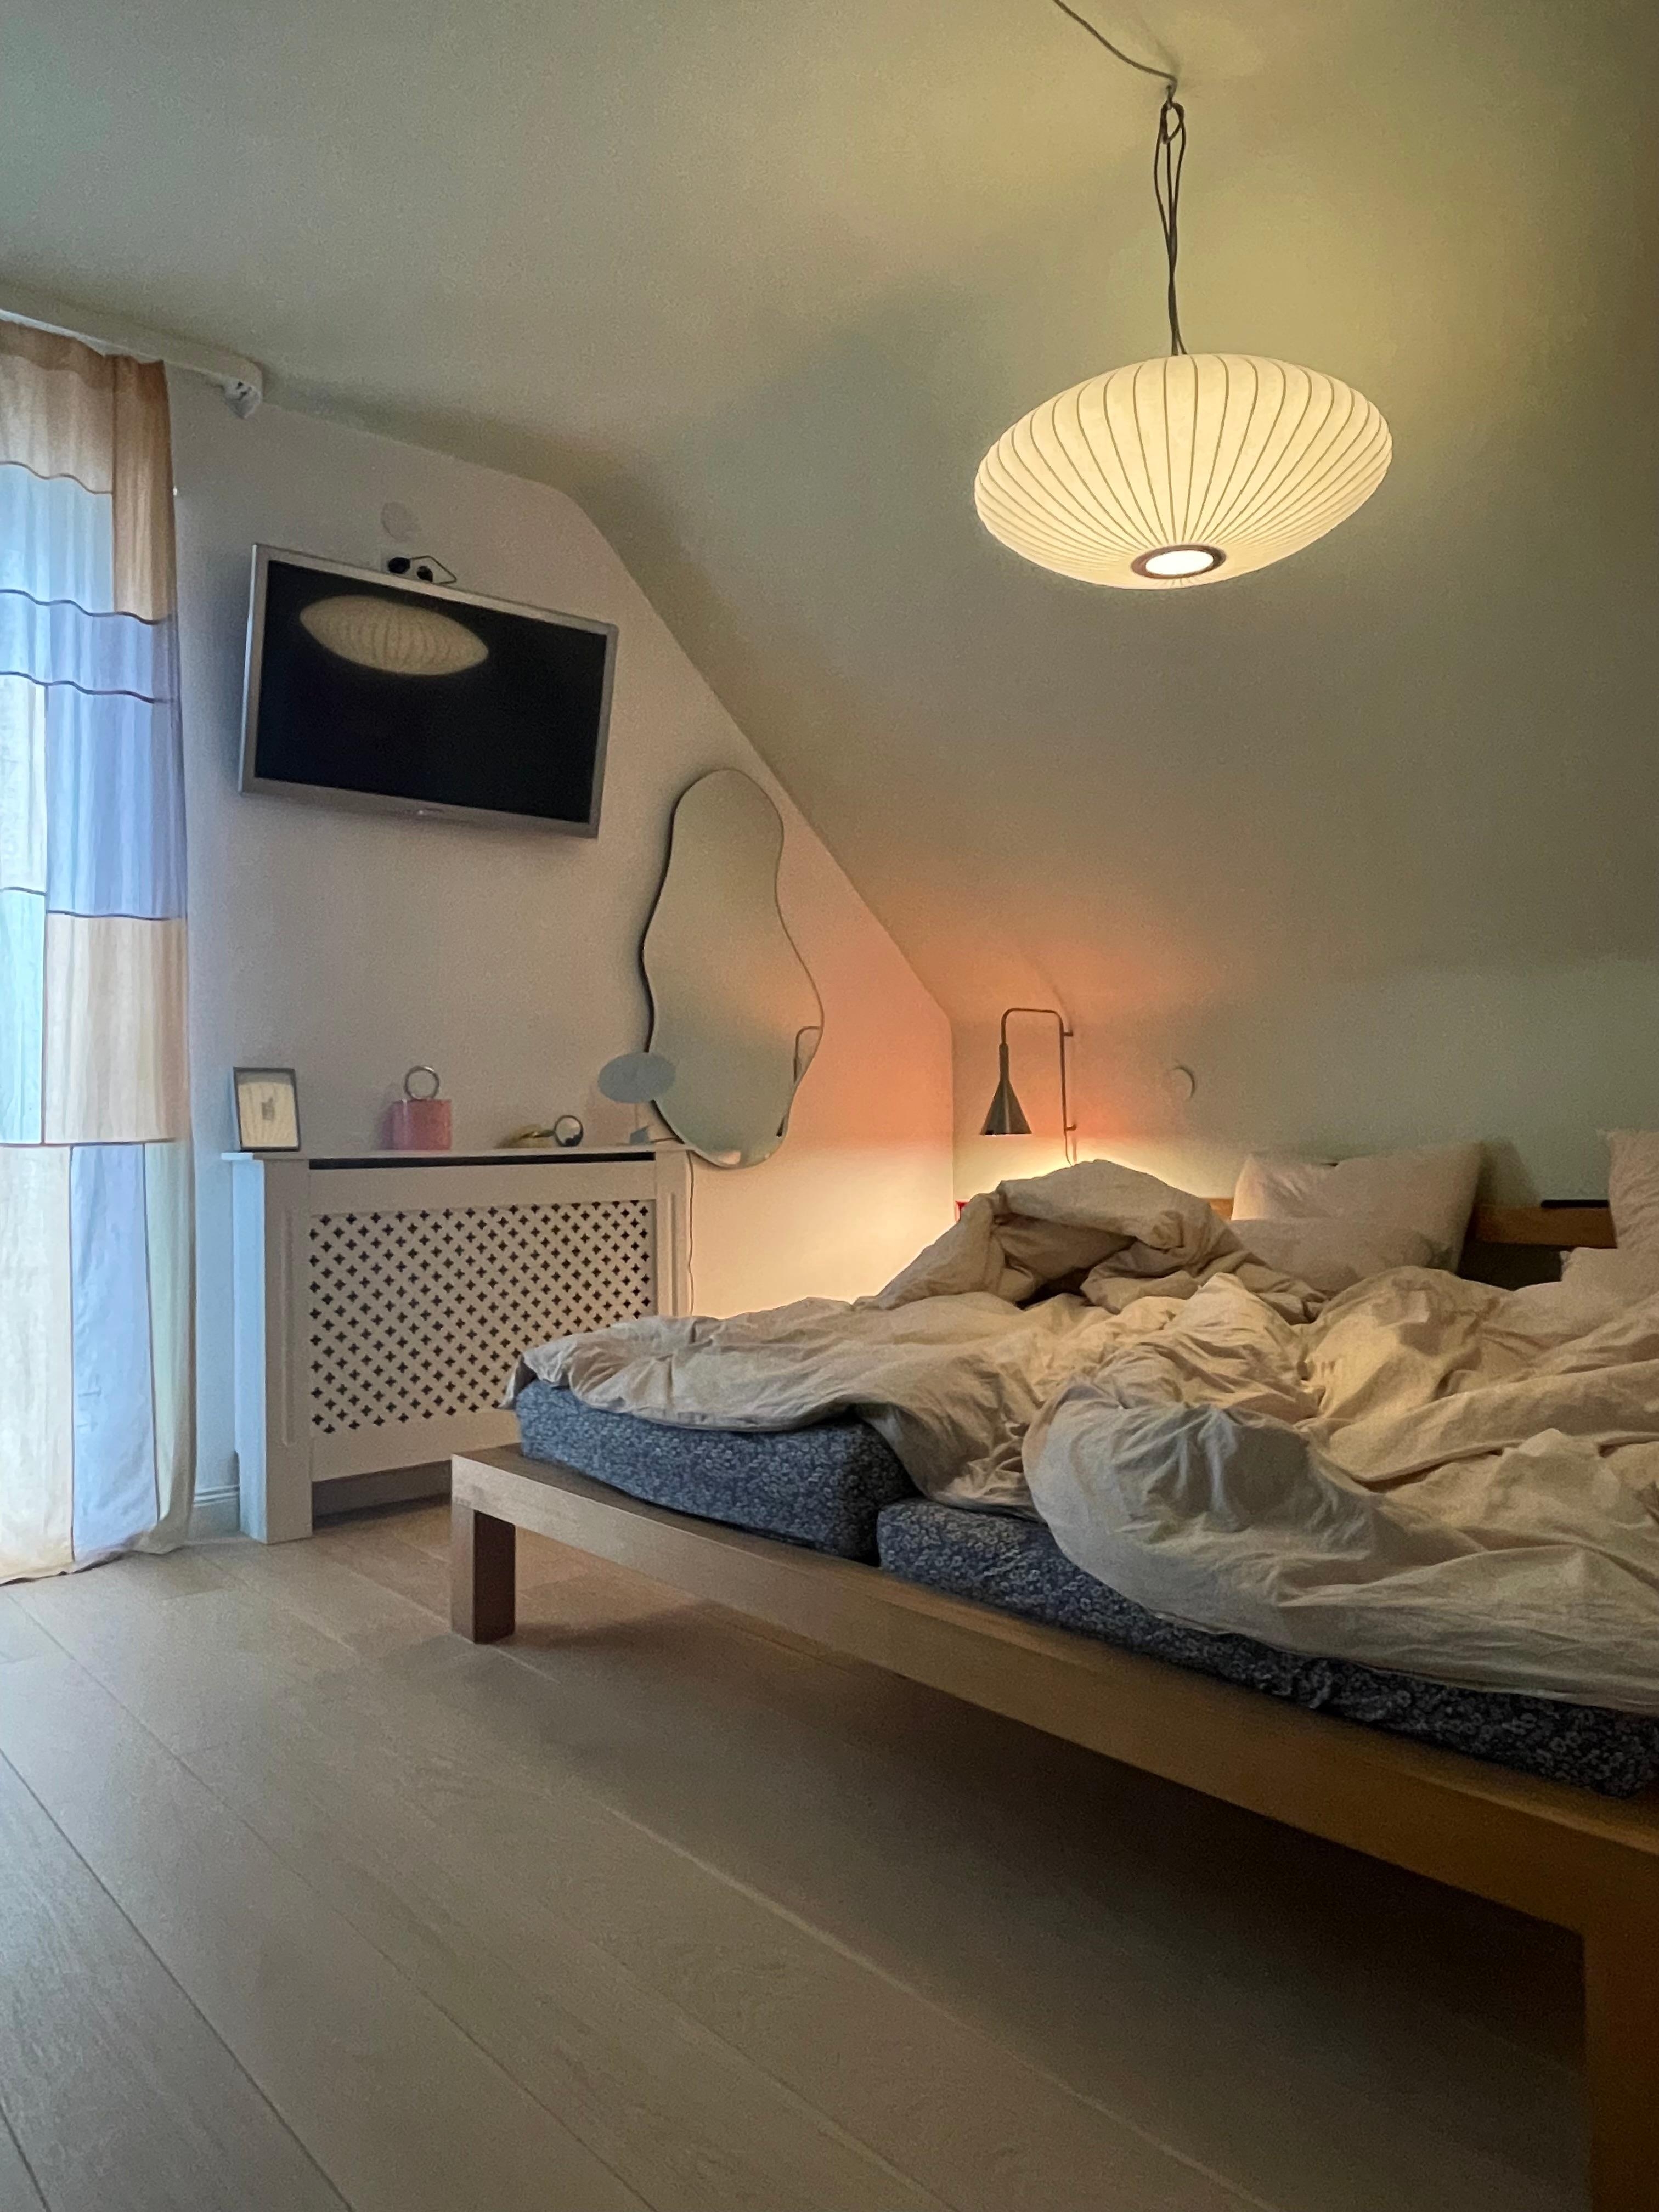 #living#home#interior#interiør#altbauliebe#wohnen#skandinavisch#couchstyle#schlafzimmer#licht#lampe#cozy#spiegel